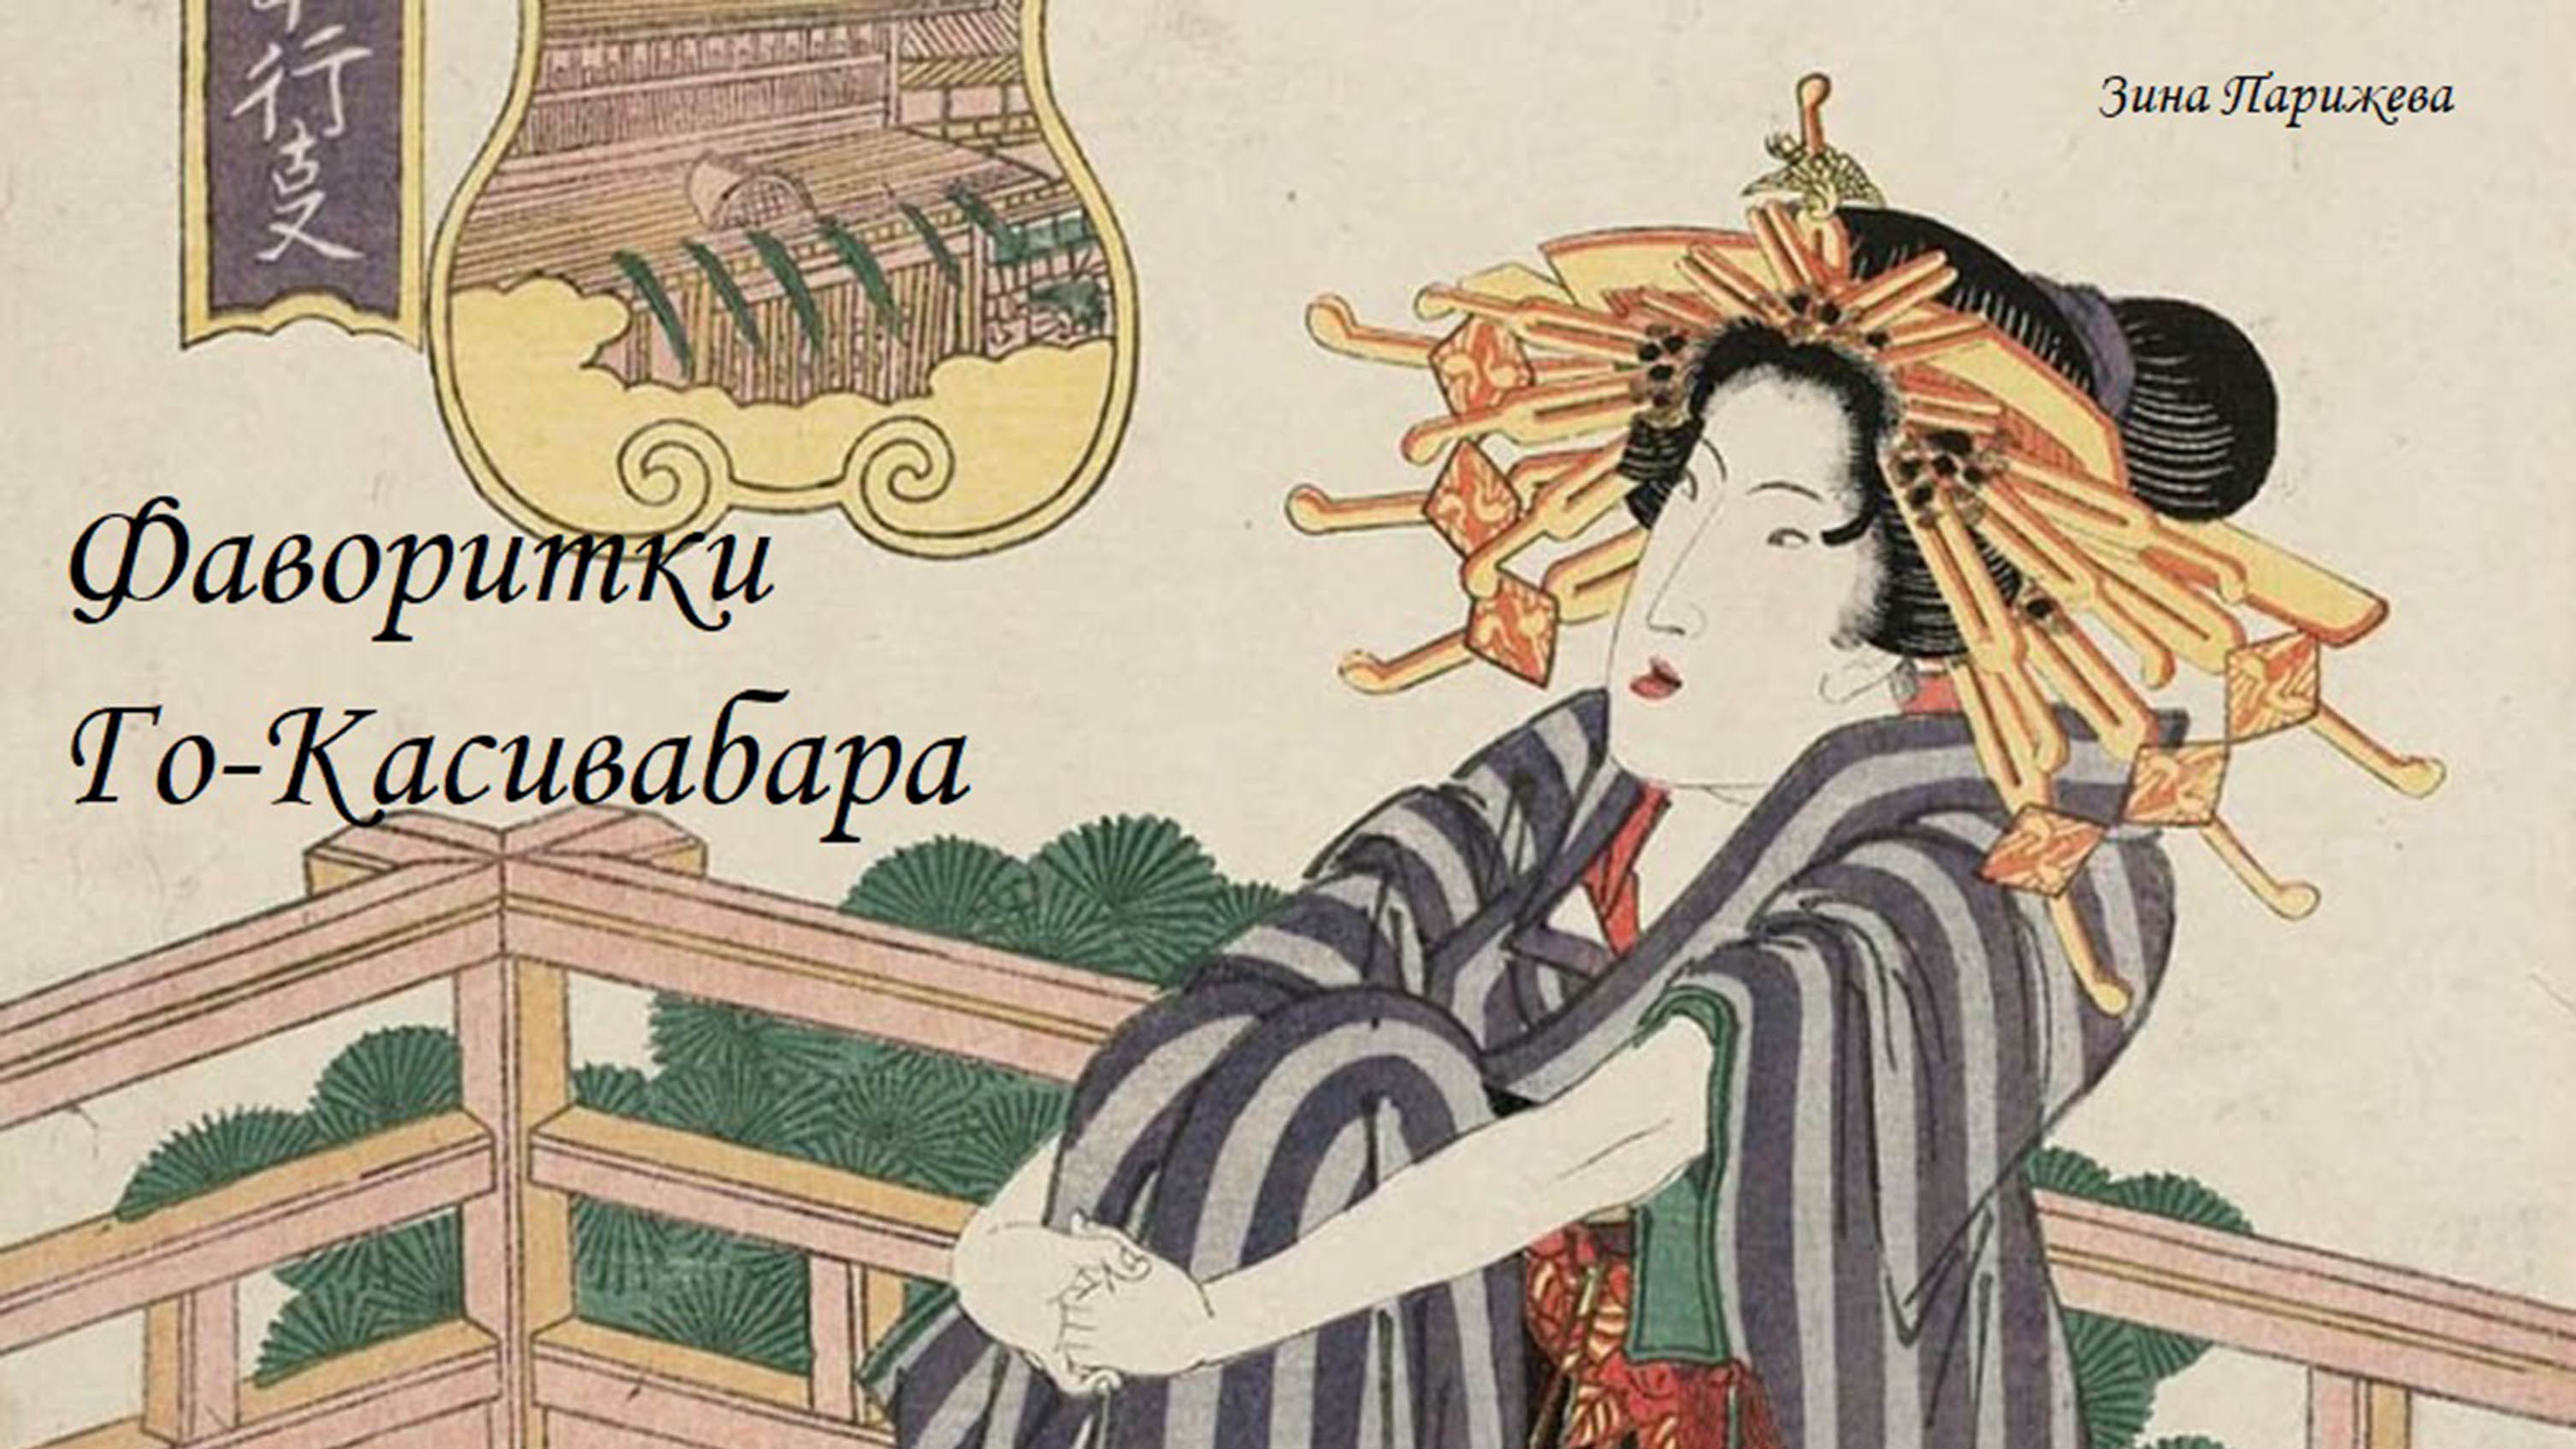 Фаворитки японских императоров: Го-Касивабара